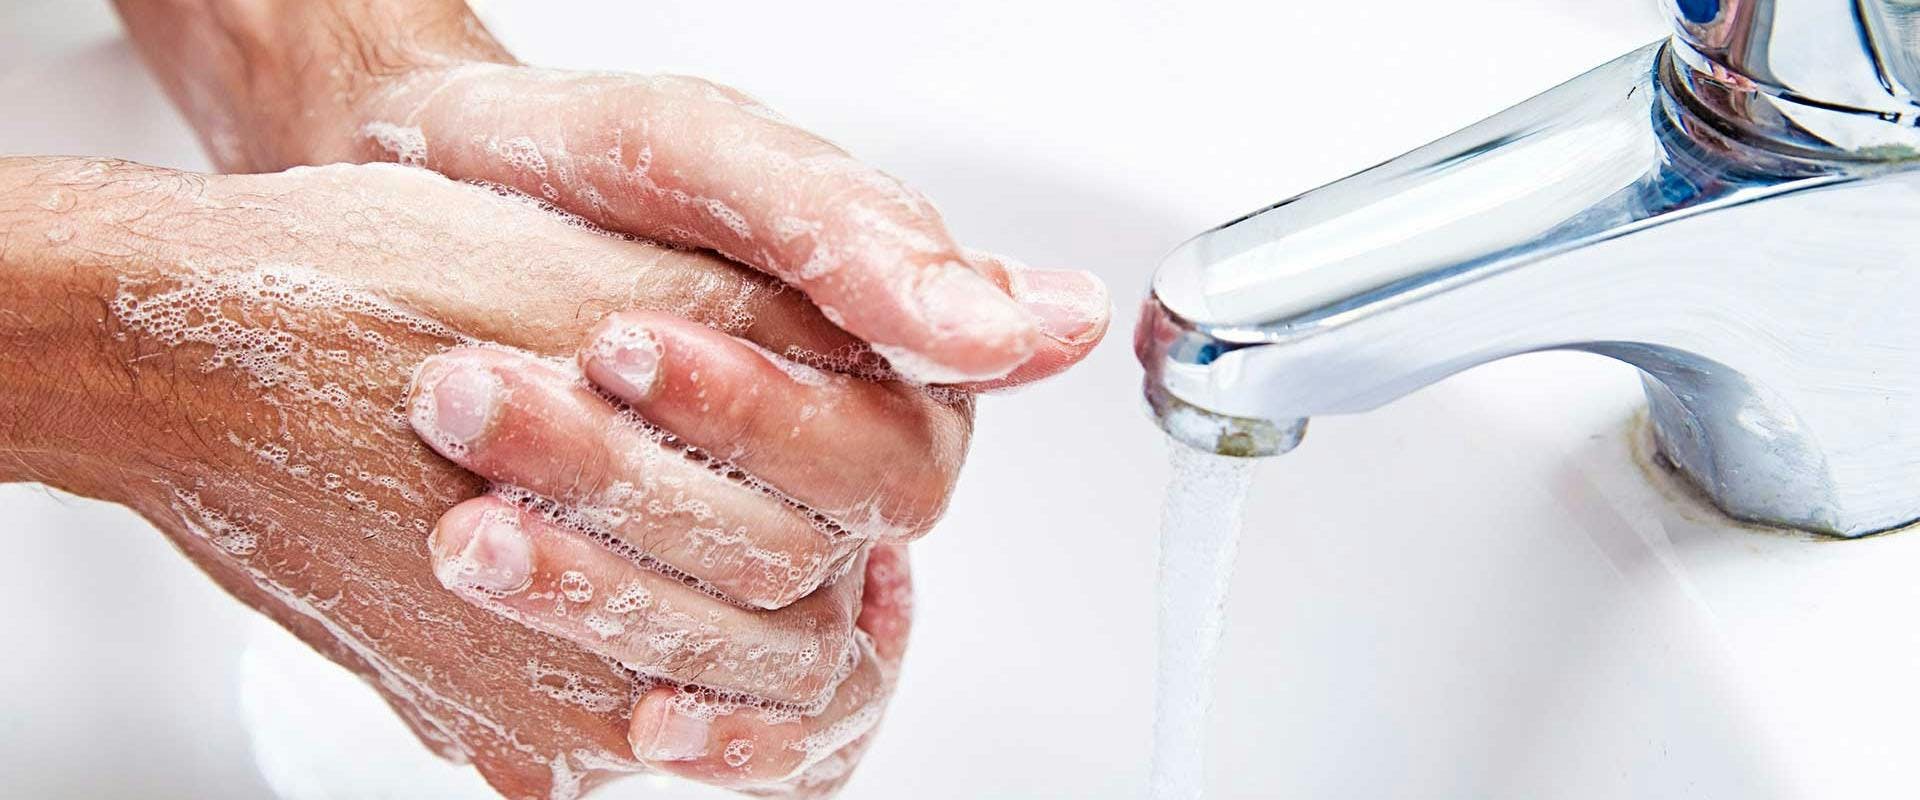 washing hand indoors